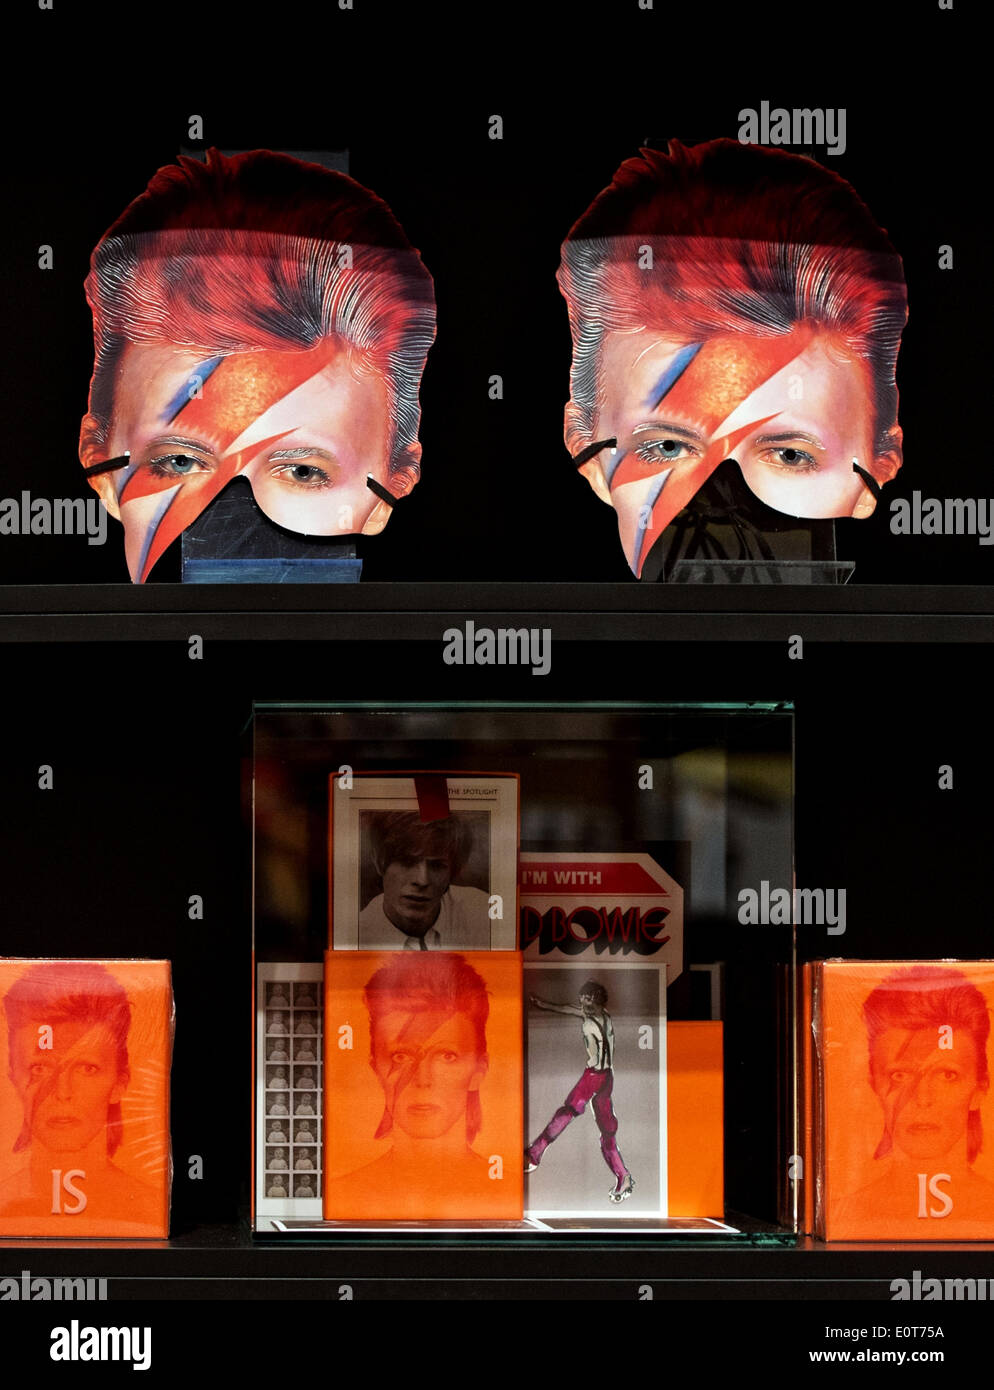 Berlin, Deutschland. 18. Mai 2014. Zwei Halbmasken mit dem Porträt des Künstlers David Bowie sind Ondisplay "David Bowie" Ausstellung im Martin-Gropius-Bau während einer Vorschau in Berlin, Deutschland, 18. Mai 2014. Die Show läuft vom 20. Mai bis 10. August 2014. Foto: SOEREN STACHE/DPA (A) "/ Dpa/Alamy Live News Stockfoto